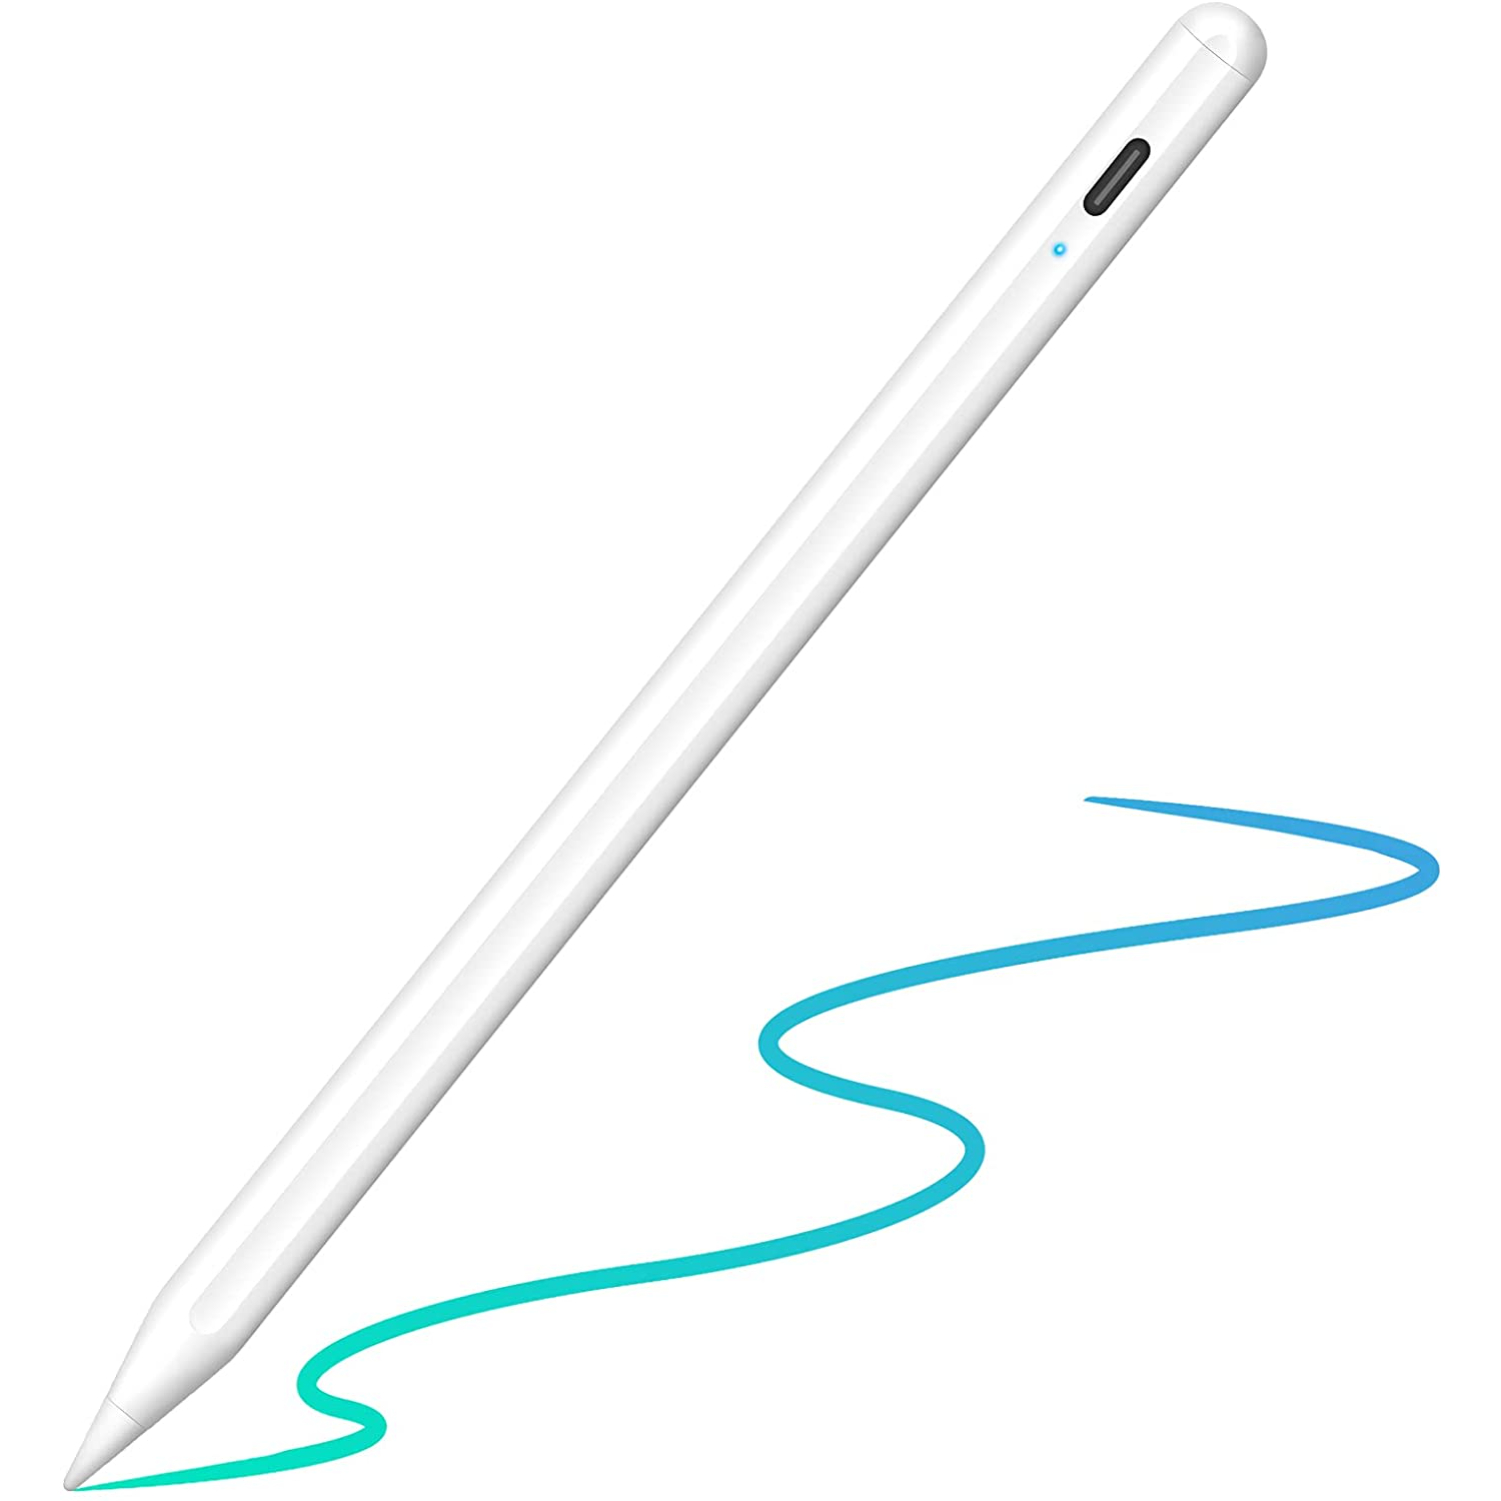 タッチペン スタイラスペン 極細 たっちぺん 超高感度 iPad スマホ タブレット対応 磁気吸着機能対応 ipad ペン USB充電式  87%OFF!